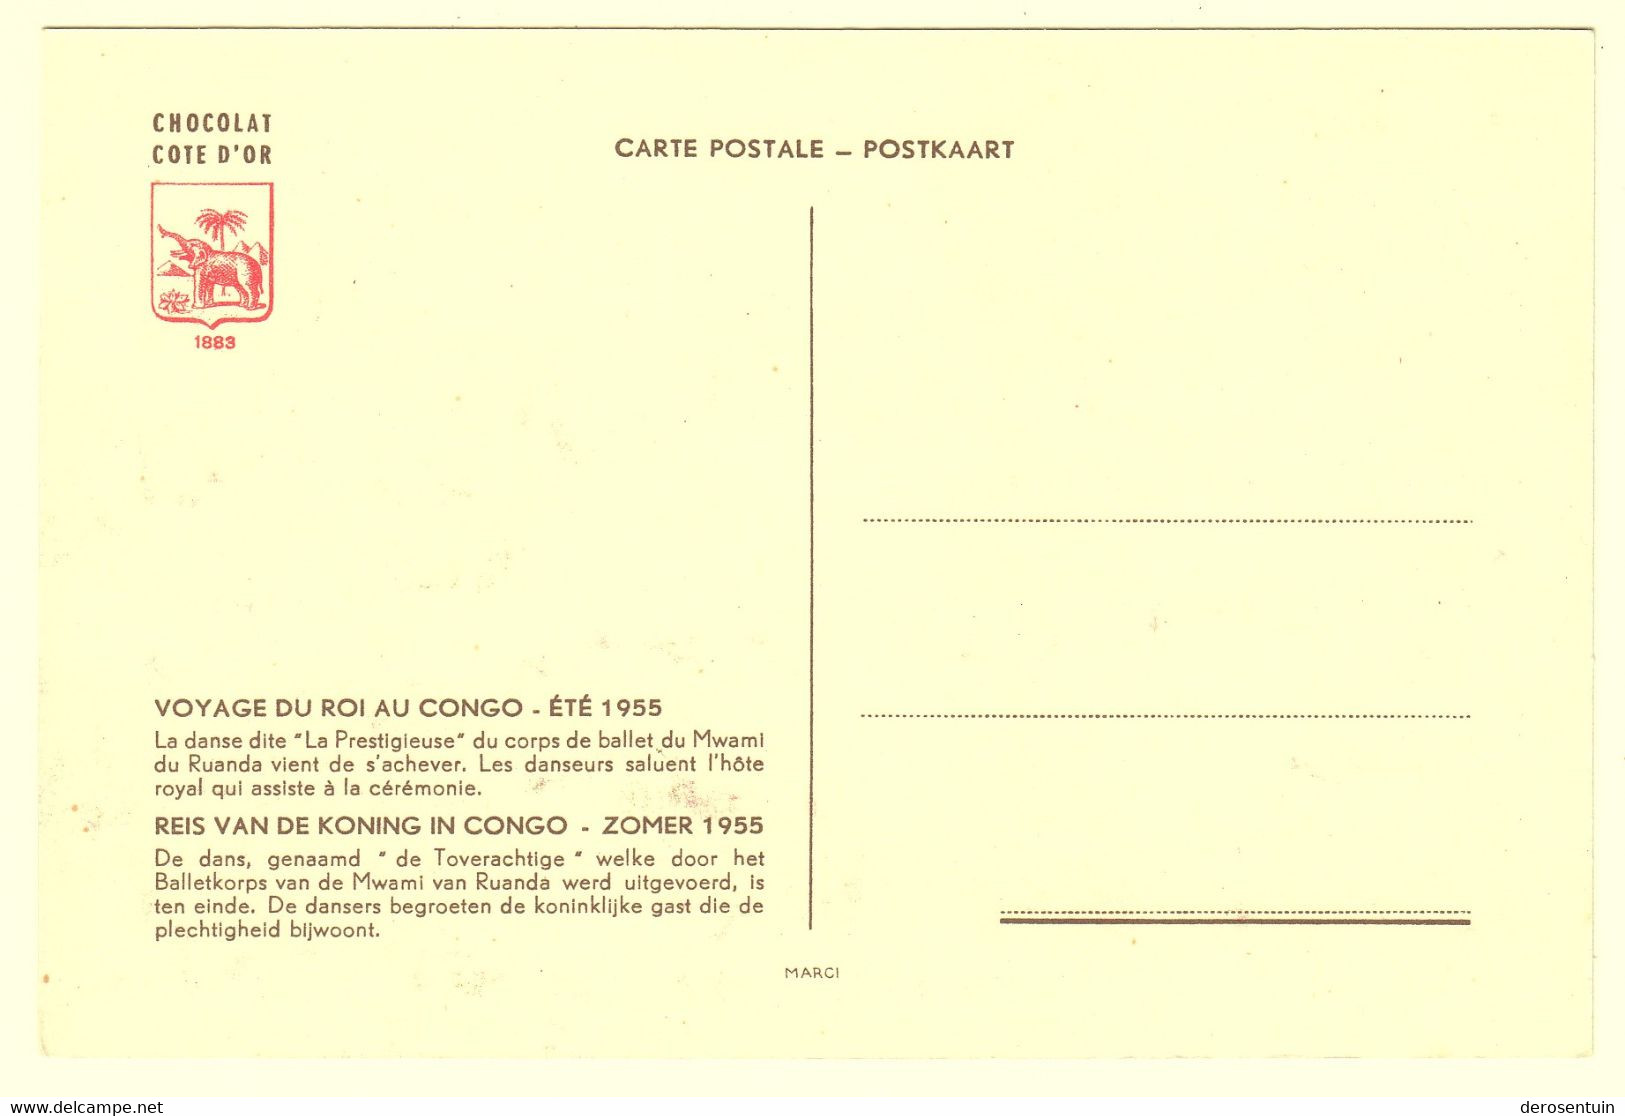 a0005	[Postkaarten] Reis van de Koning in Congo - Zomer 1955 (Boudewijn Baudouin voyage au). - Lot van 58 postkaarten